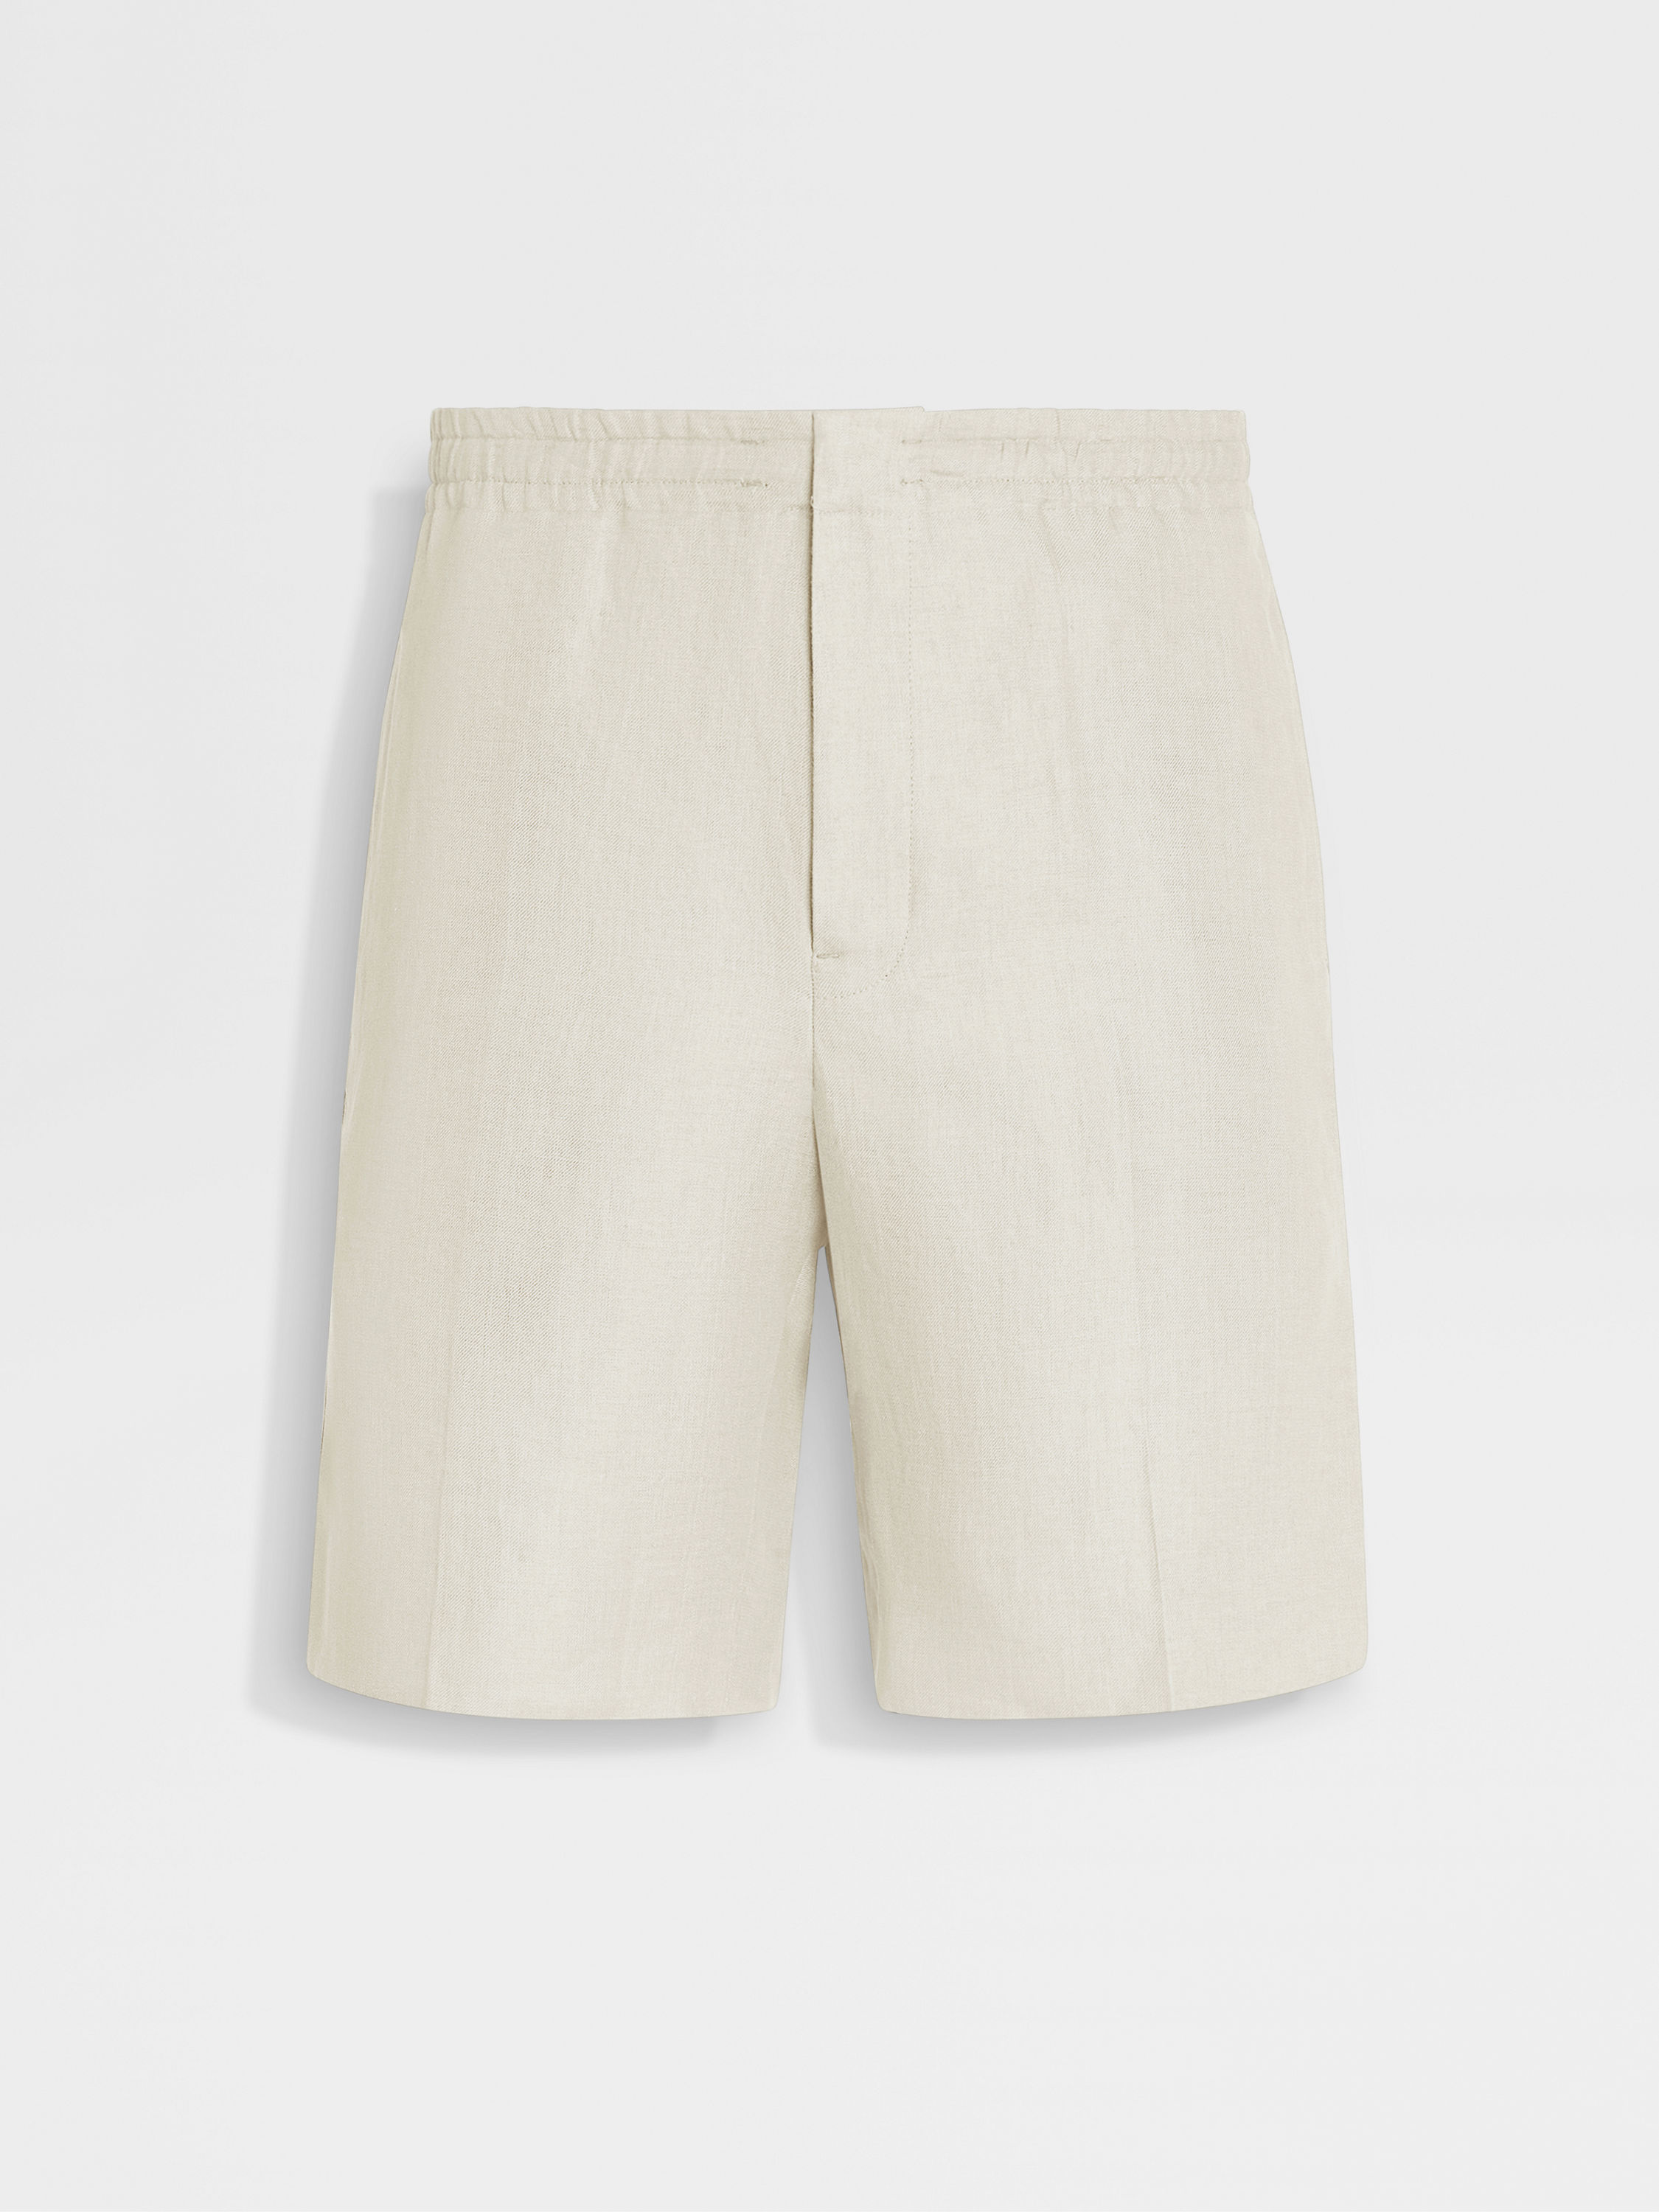 米白色 Oasi Lino 短裤